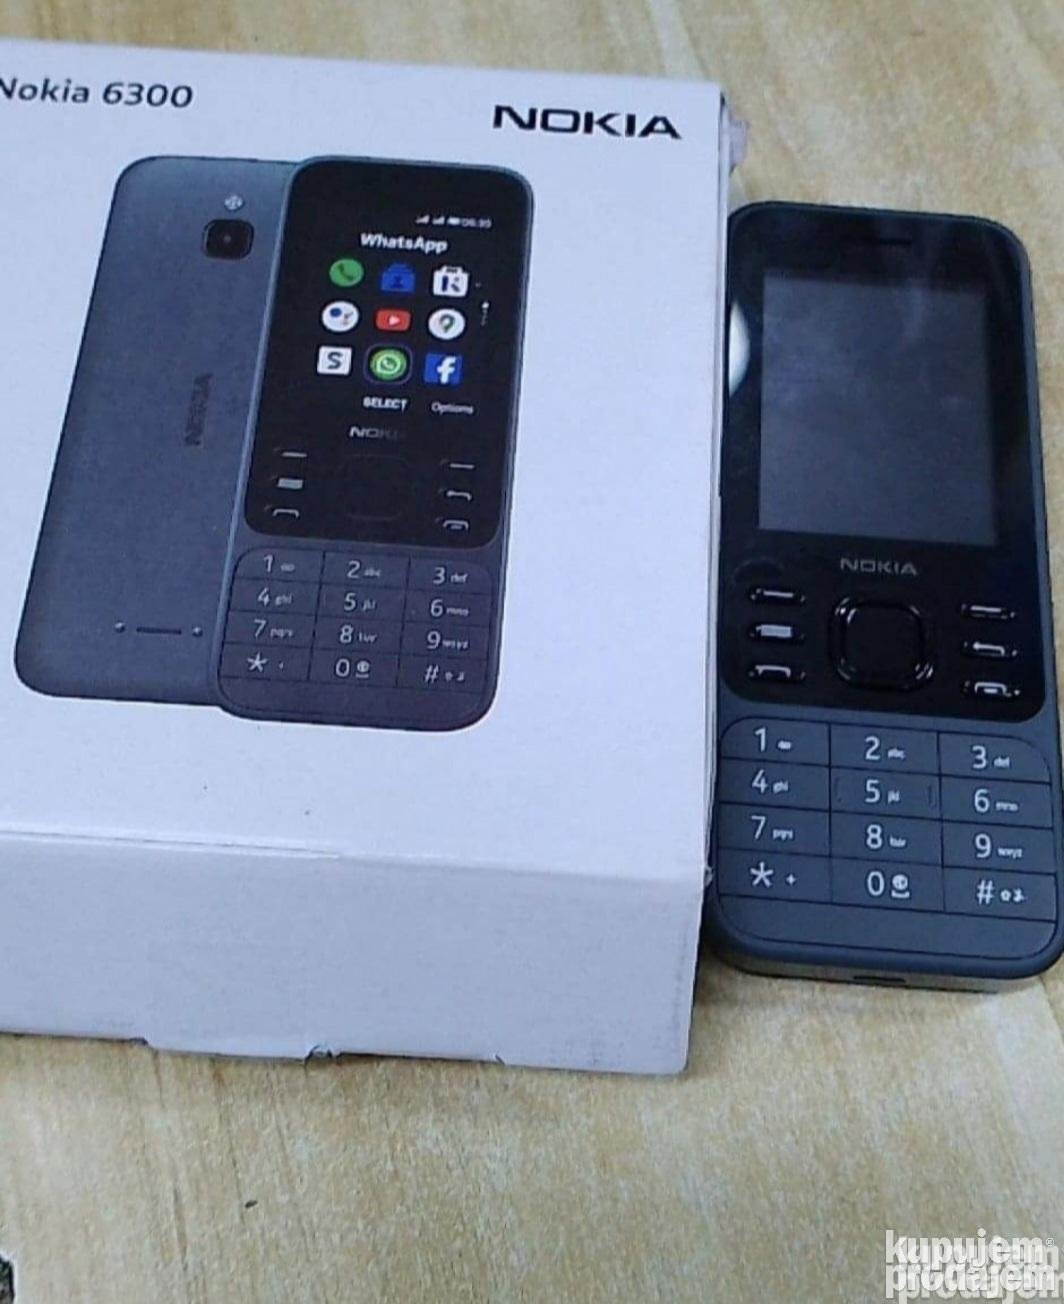 Nokia 6300 Nokia 6300 Mobilni Nokia 6300 - Nokia 6300 Nokia 6300 Mobilni Nokia 6300